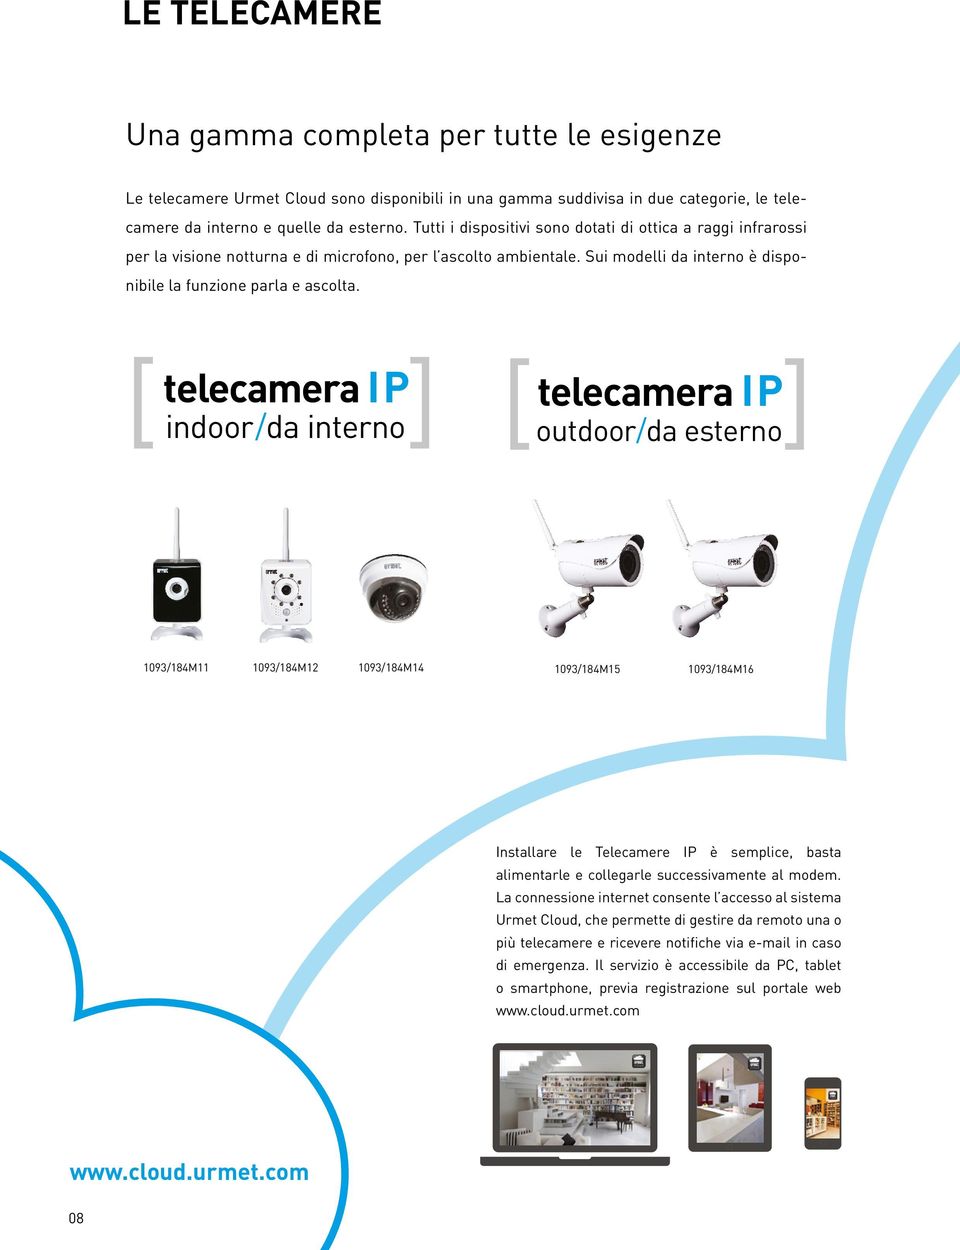 [ telecamera IP ] indoor /da interno [ telecamera IP ] outdoor/da esterno 1093/184M11 1093/184M12 1093/184M14 1093/184M15 1093/184M16 Installare le Telecamere IP è semplice, basta alimentarle e